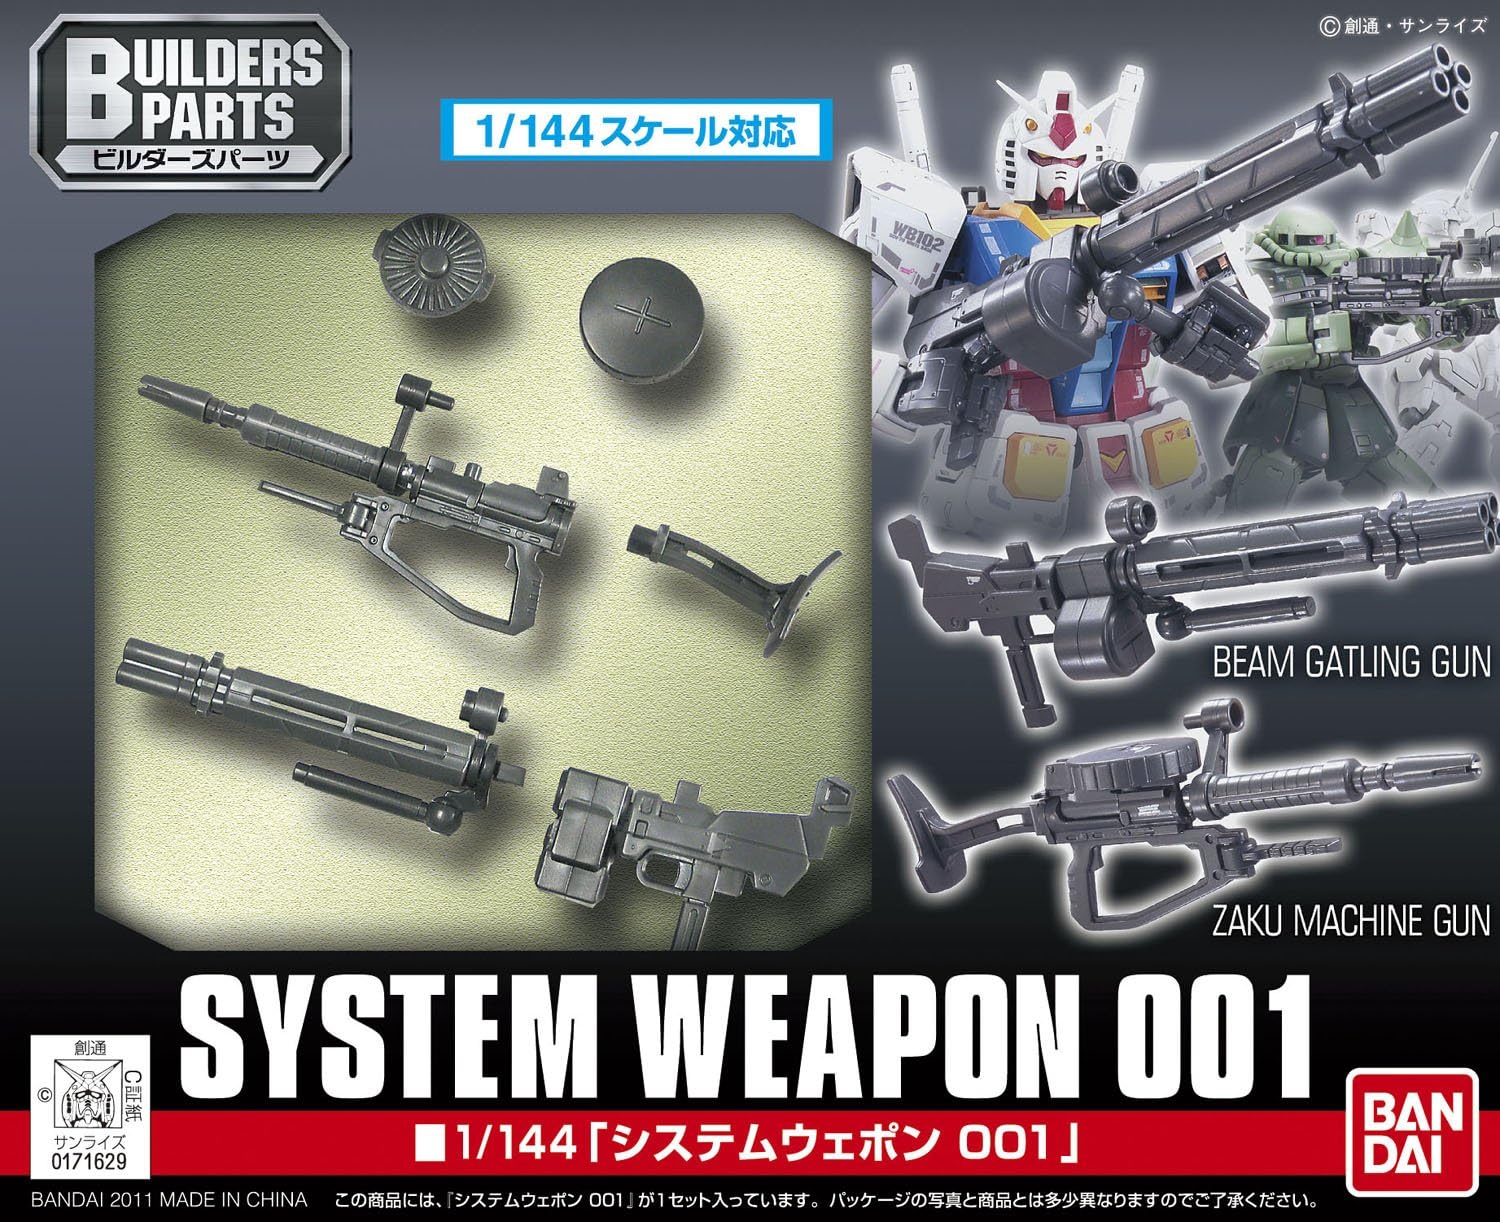 1/144 EXPO 01 "Gundam" System Weapon 1 | animota